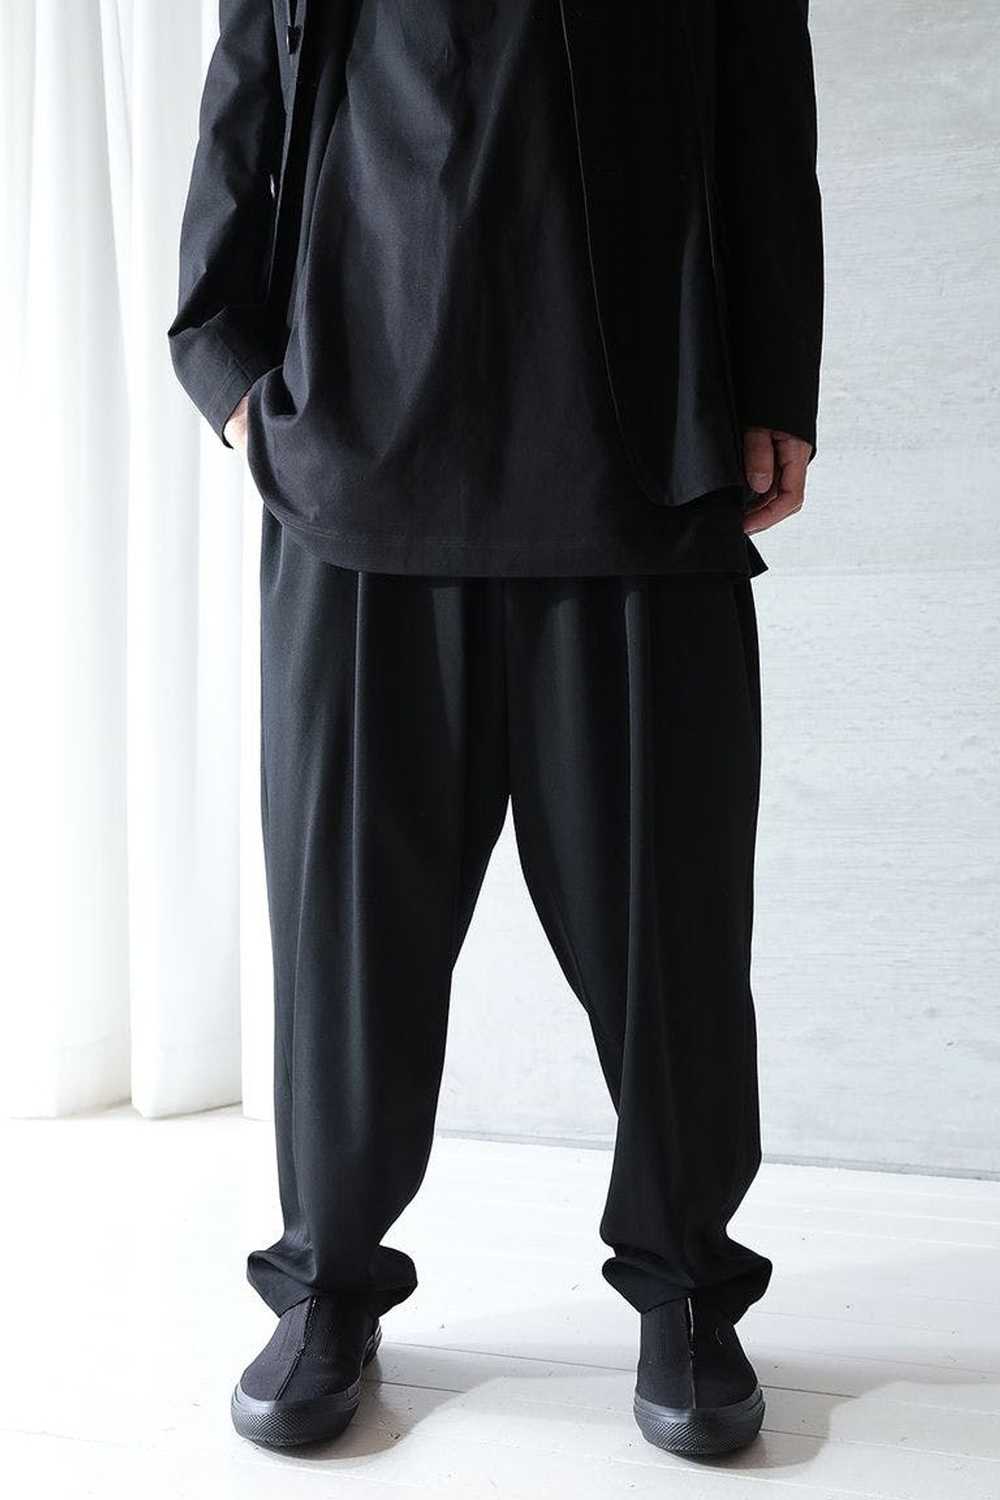 Yohji Yamamoto Yohji Yamamoto Pour Homme SS21 - G… - image 1